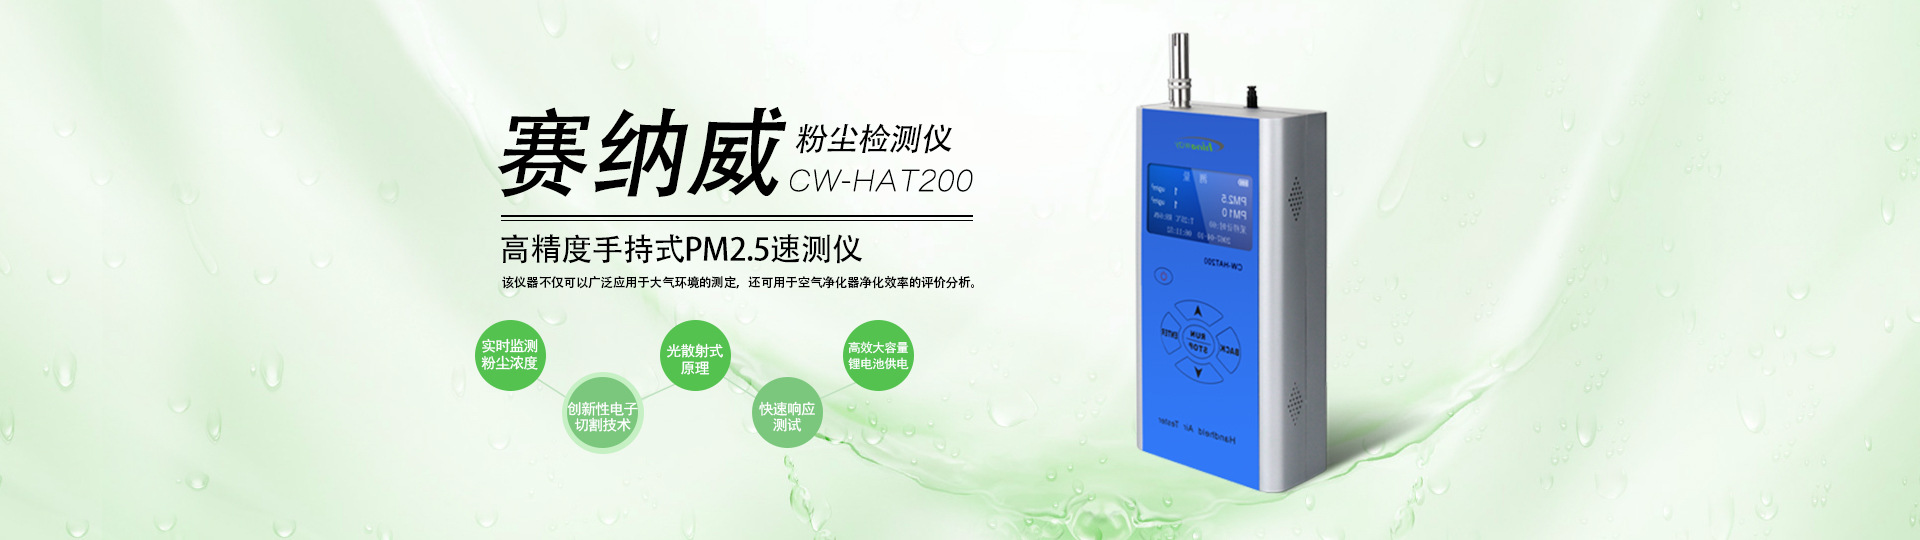 高精度便携手持式PM 2.5速测仪CW-HAT200